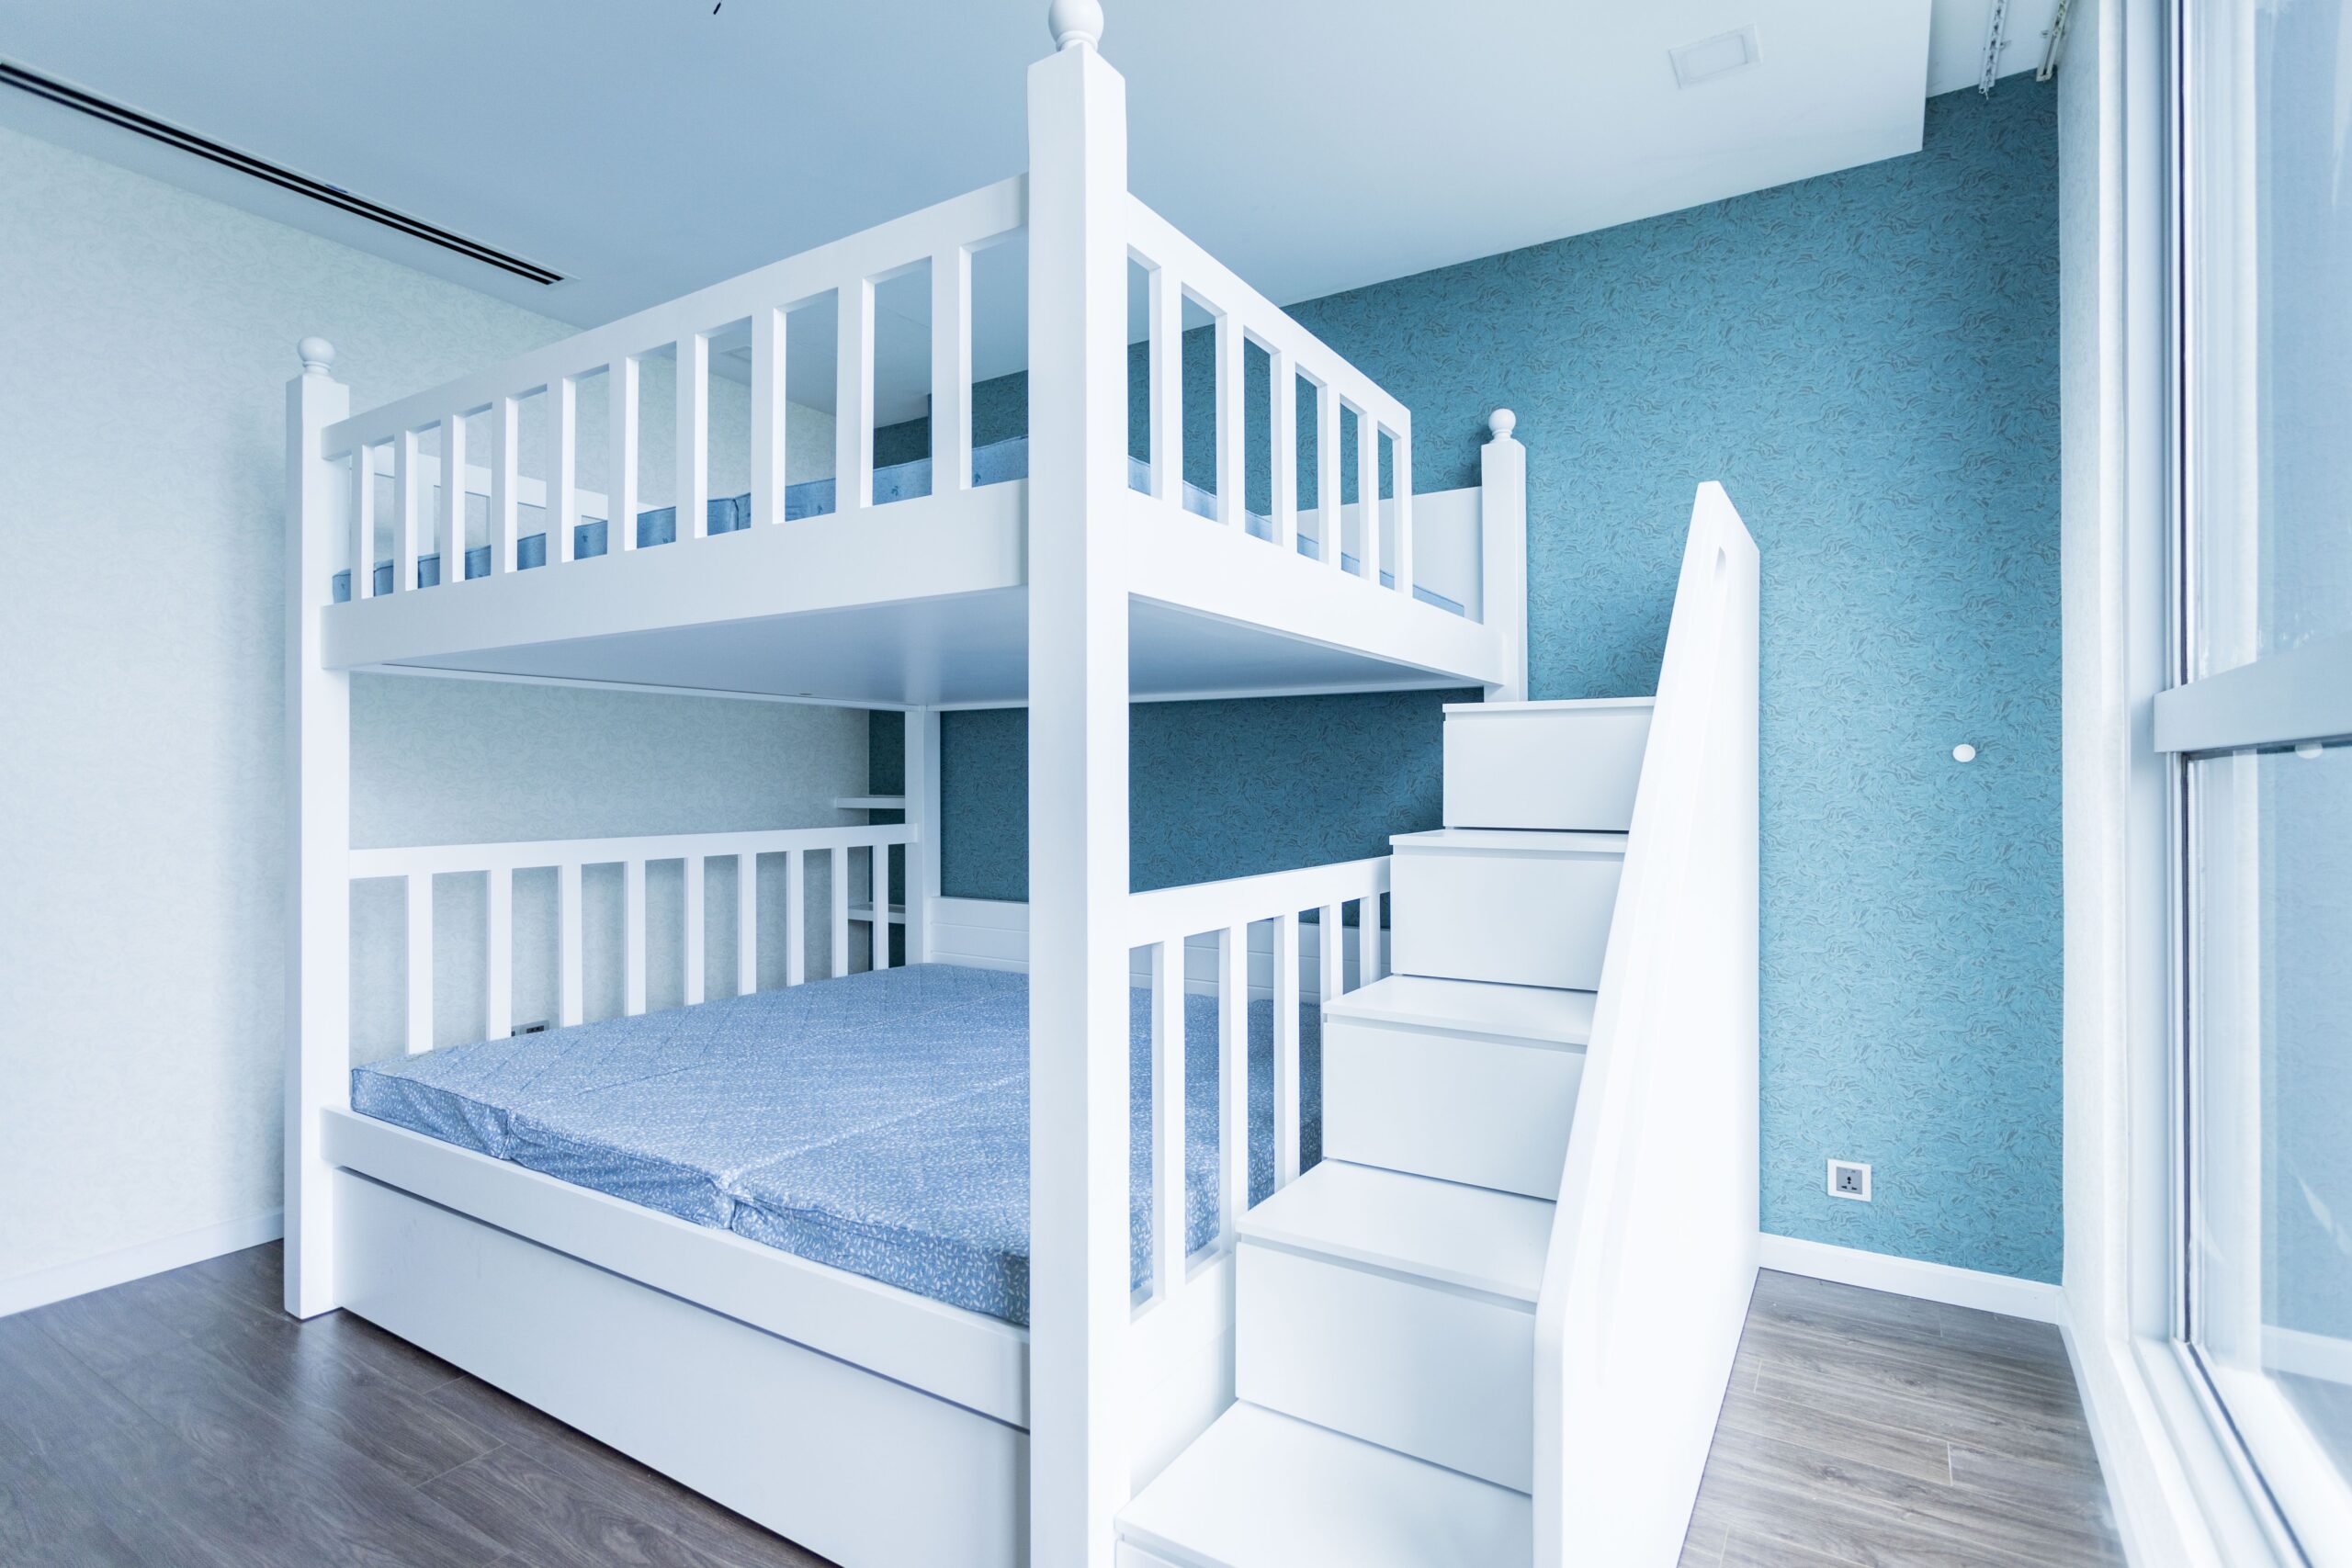 Thi công nội thất phòng ngủ 2 bé trai và gái sử giường tầng dụng gam màu trắng phối xanh tinh tế